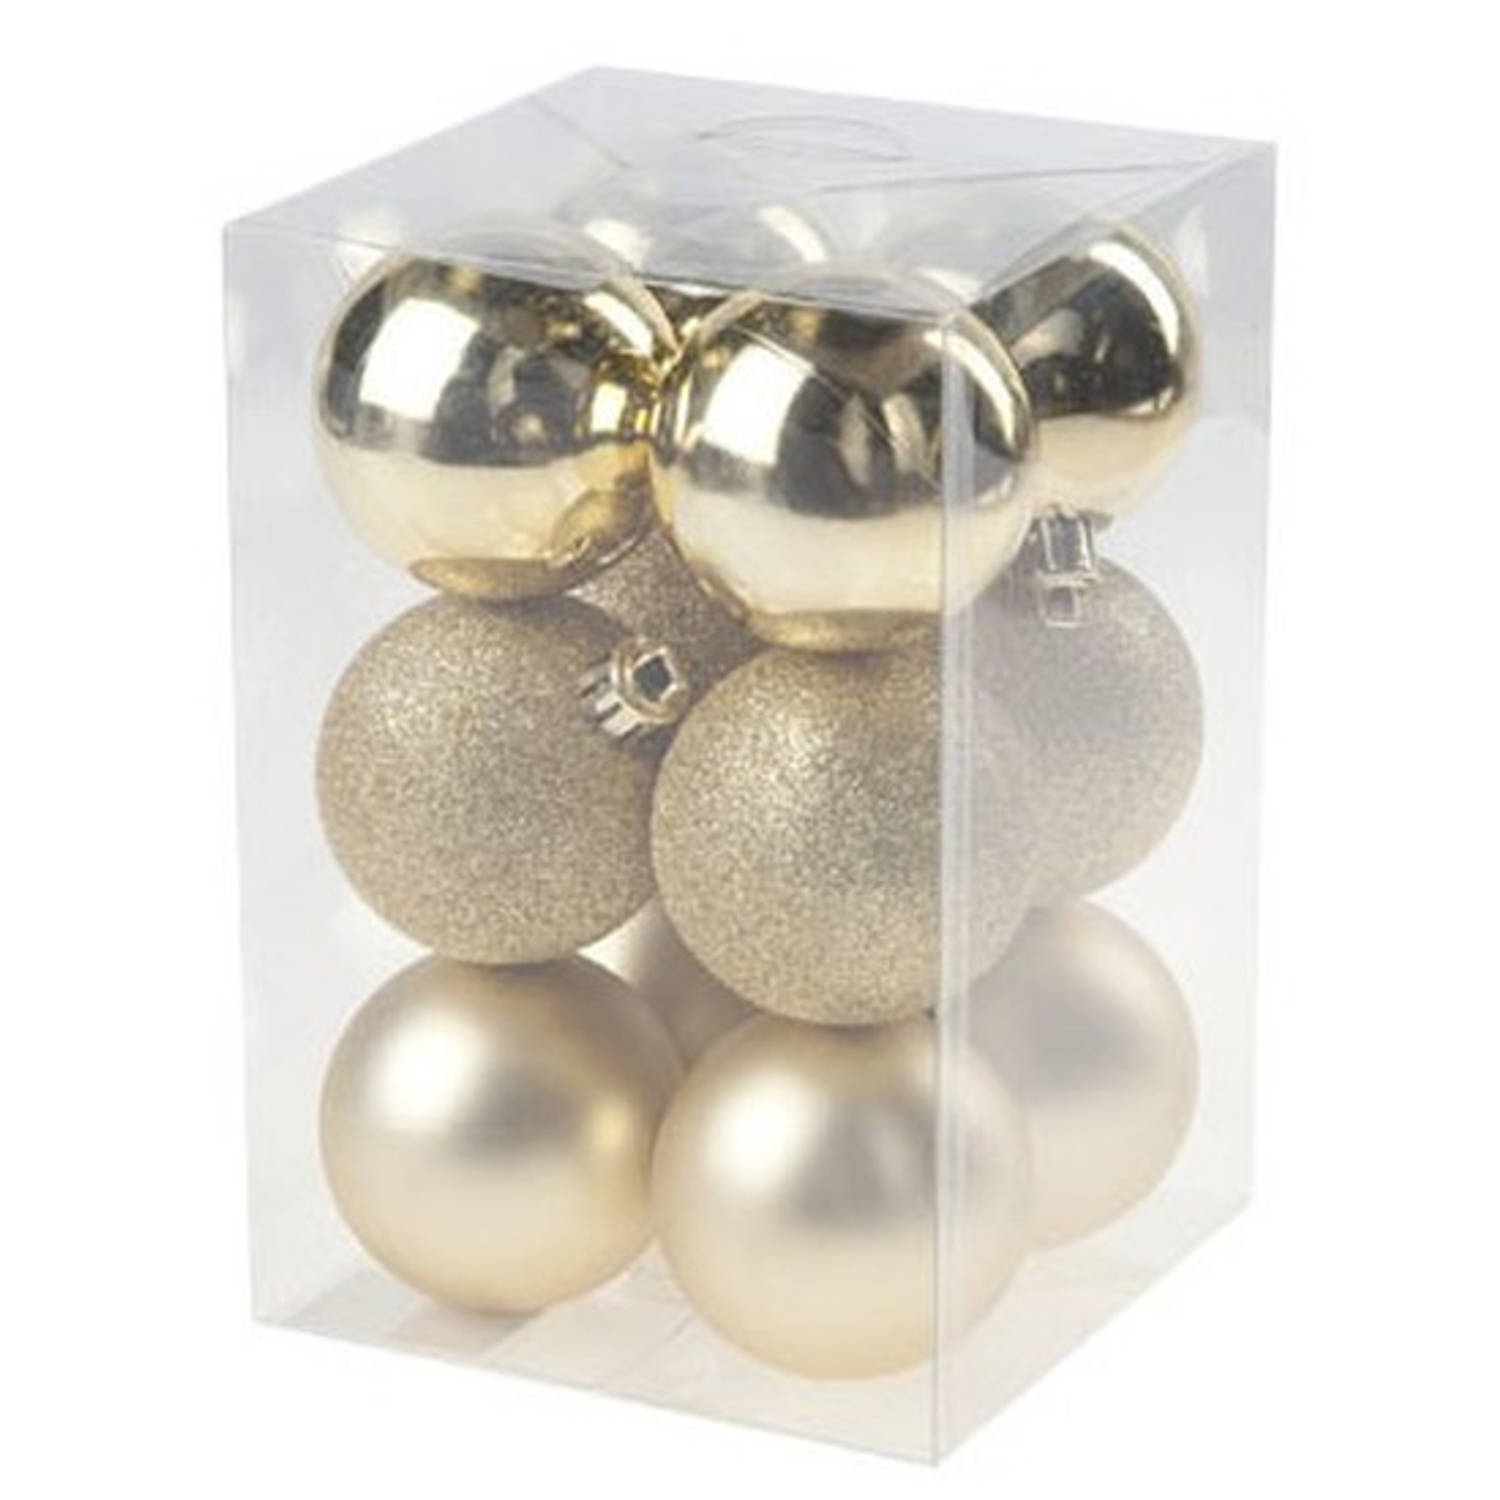 12x Gouden kunststof kerstballen 6 cm - Mat/glans - Onbreekbare plastic kerstballen - Kerstboomversiering goud